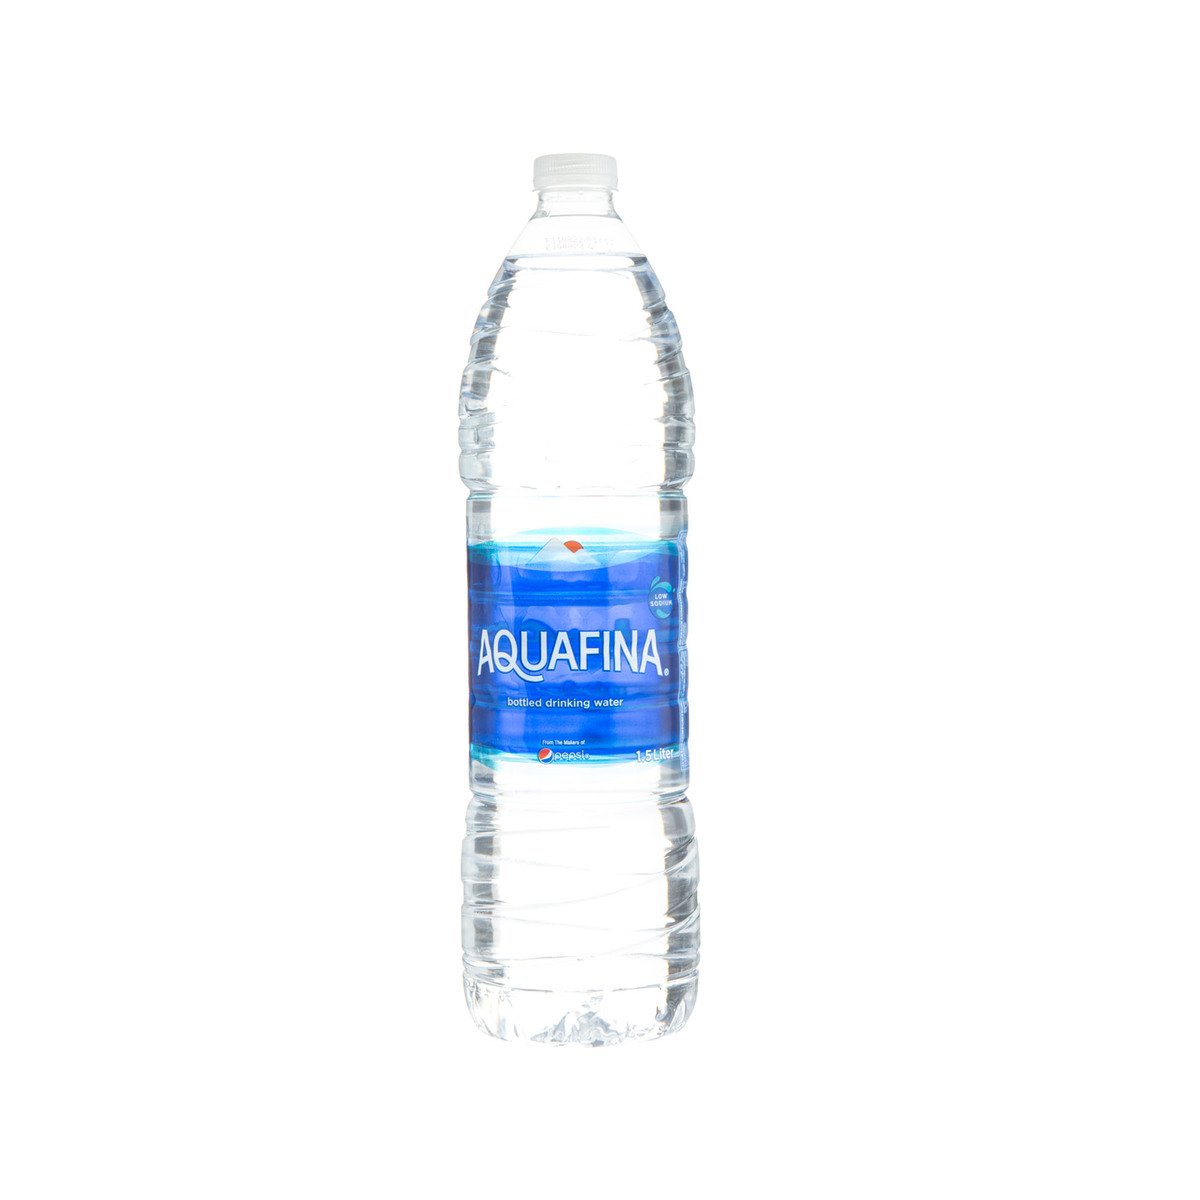 اشتري قم بشراء أكوافينا مياه الشرب المعبأة 1.5 لتر × 6 Online at Best Price من الموقع - من لولو هايبر ماركت Mineral /Spring Wate في السعودية